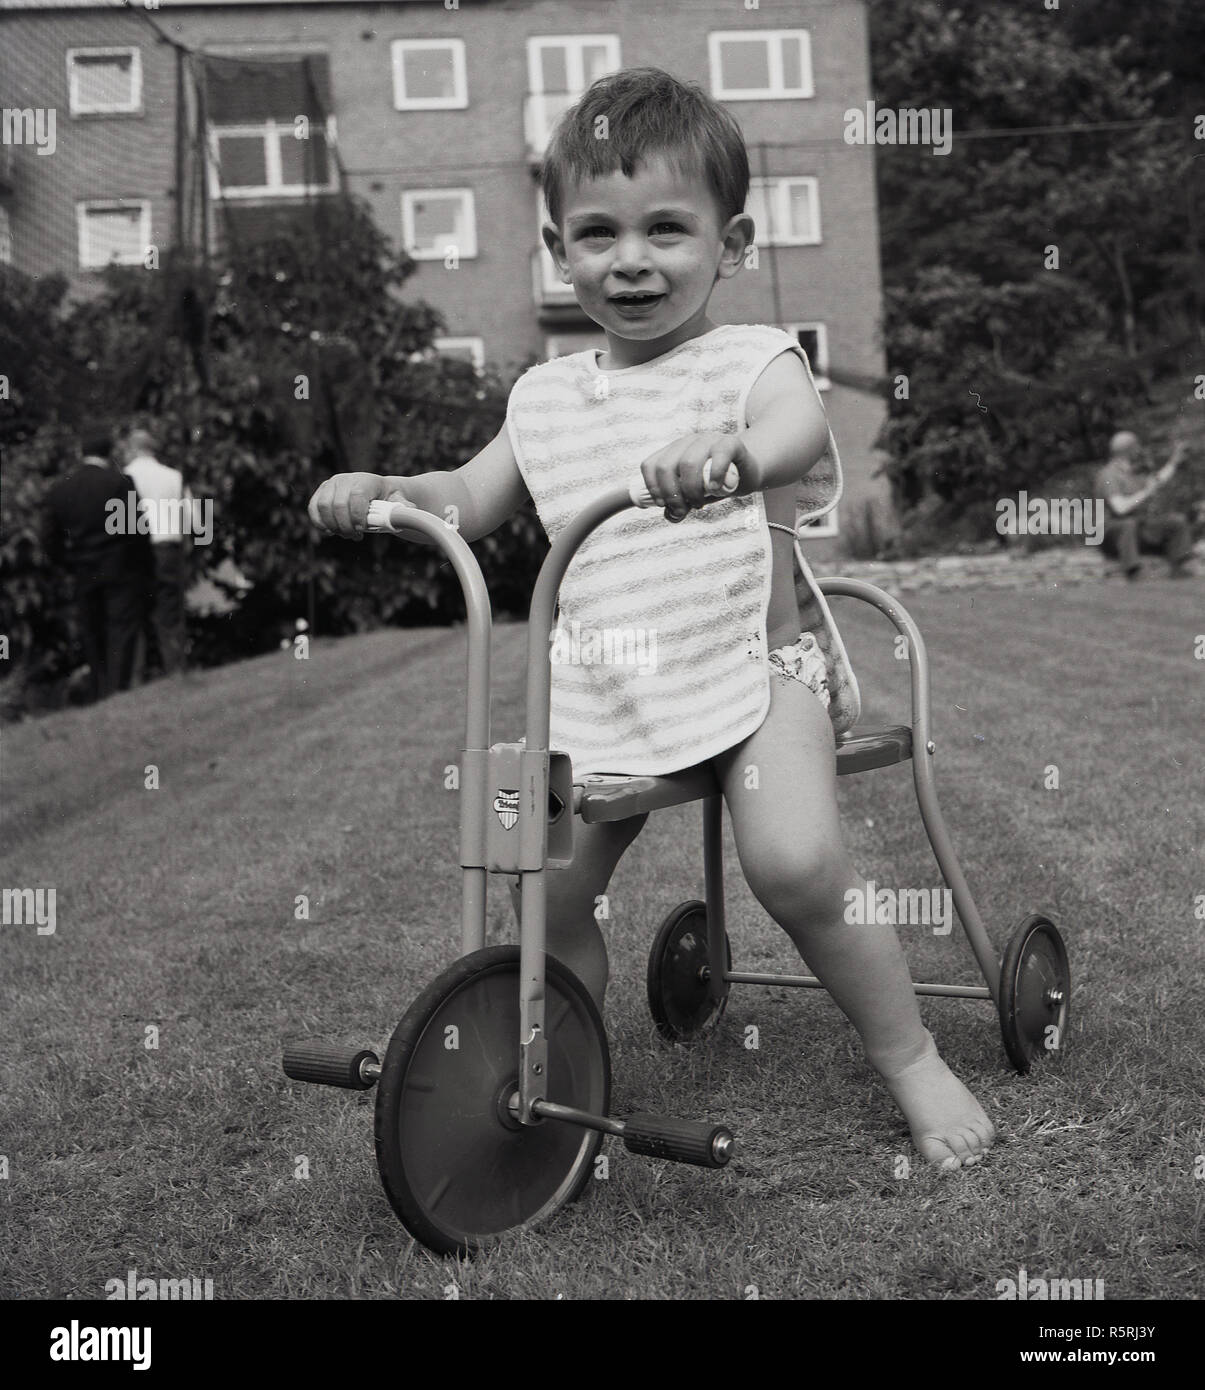 Années 1960, historique, un bébé garçon sur un tour-sur-métal produits tricycle sur une pelouse à l'extérieur d'un bloc d'appartements, England, UK. Tricycles ou trikes aider les enfants avec l'apprentissage de l'équilibre et la coordination. Banque D'Images